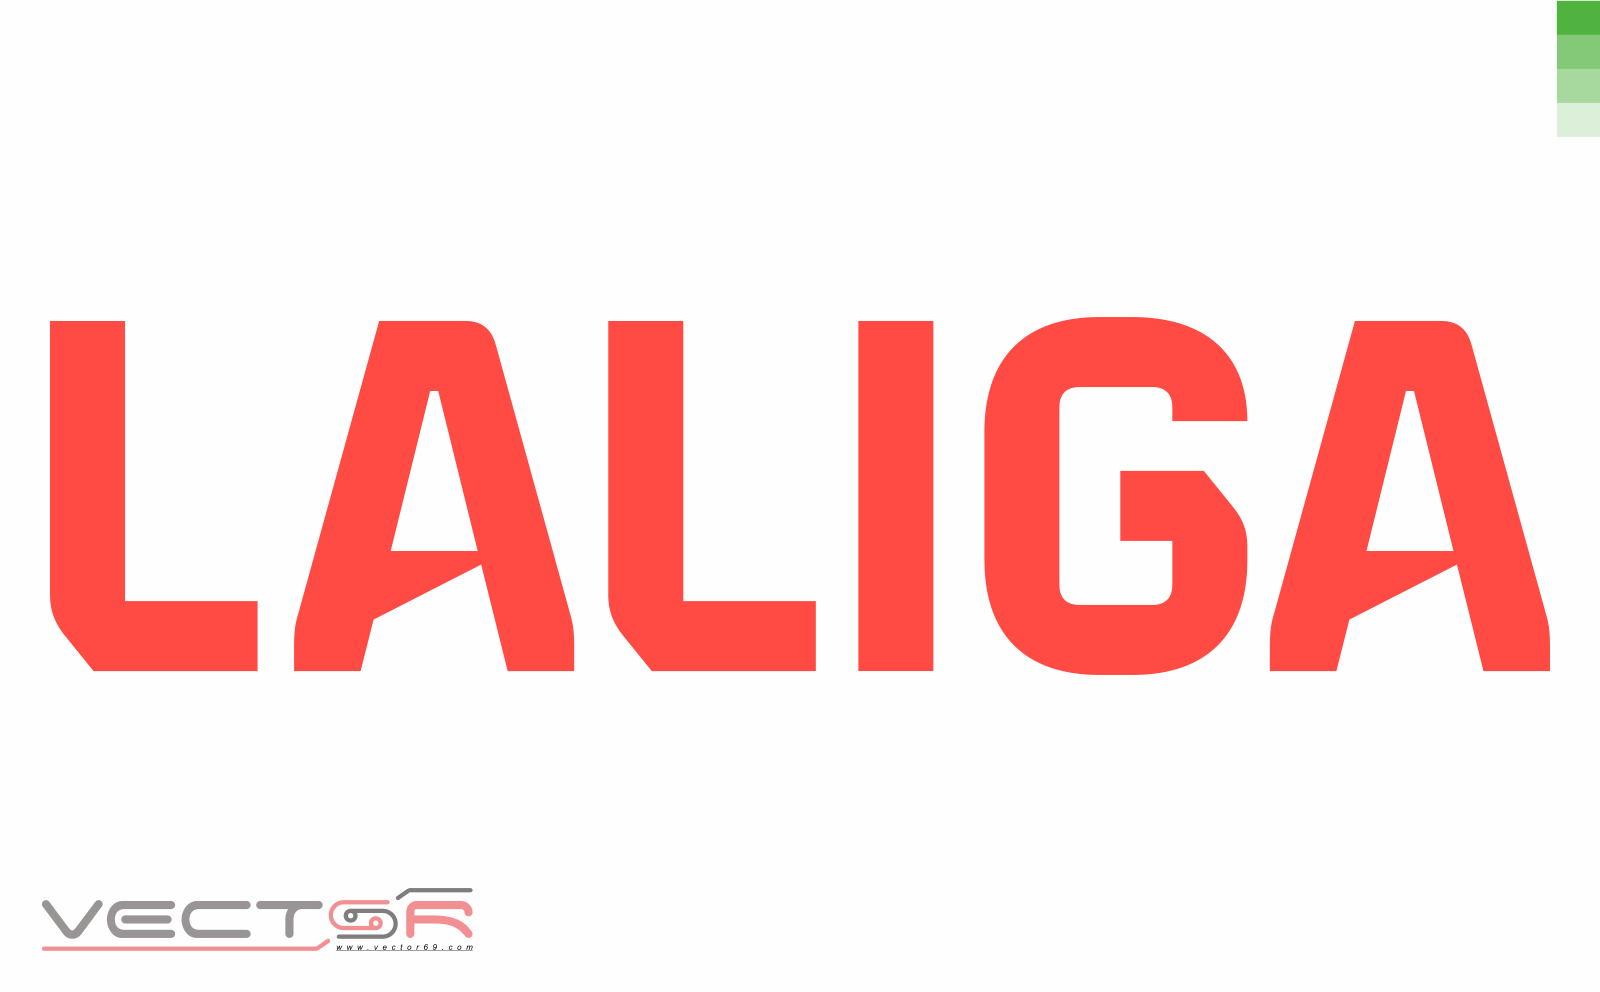 LaLiga Logo - Download Vector File CDR (CorelDraw)